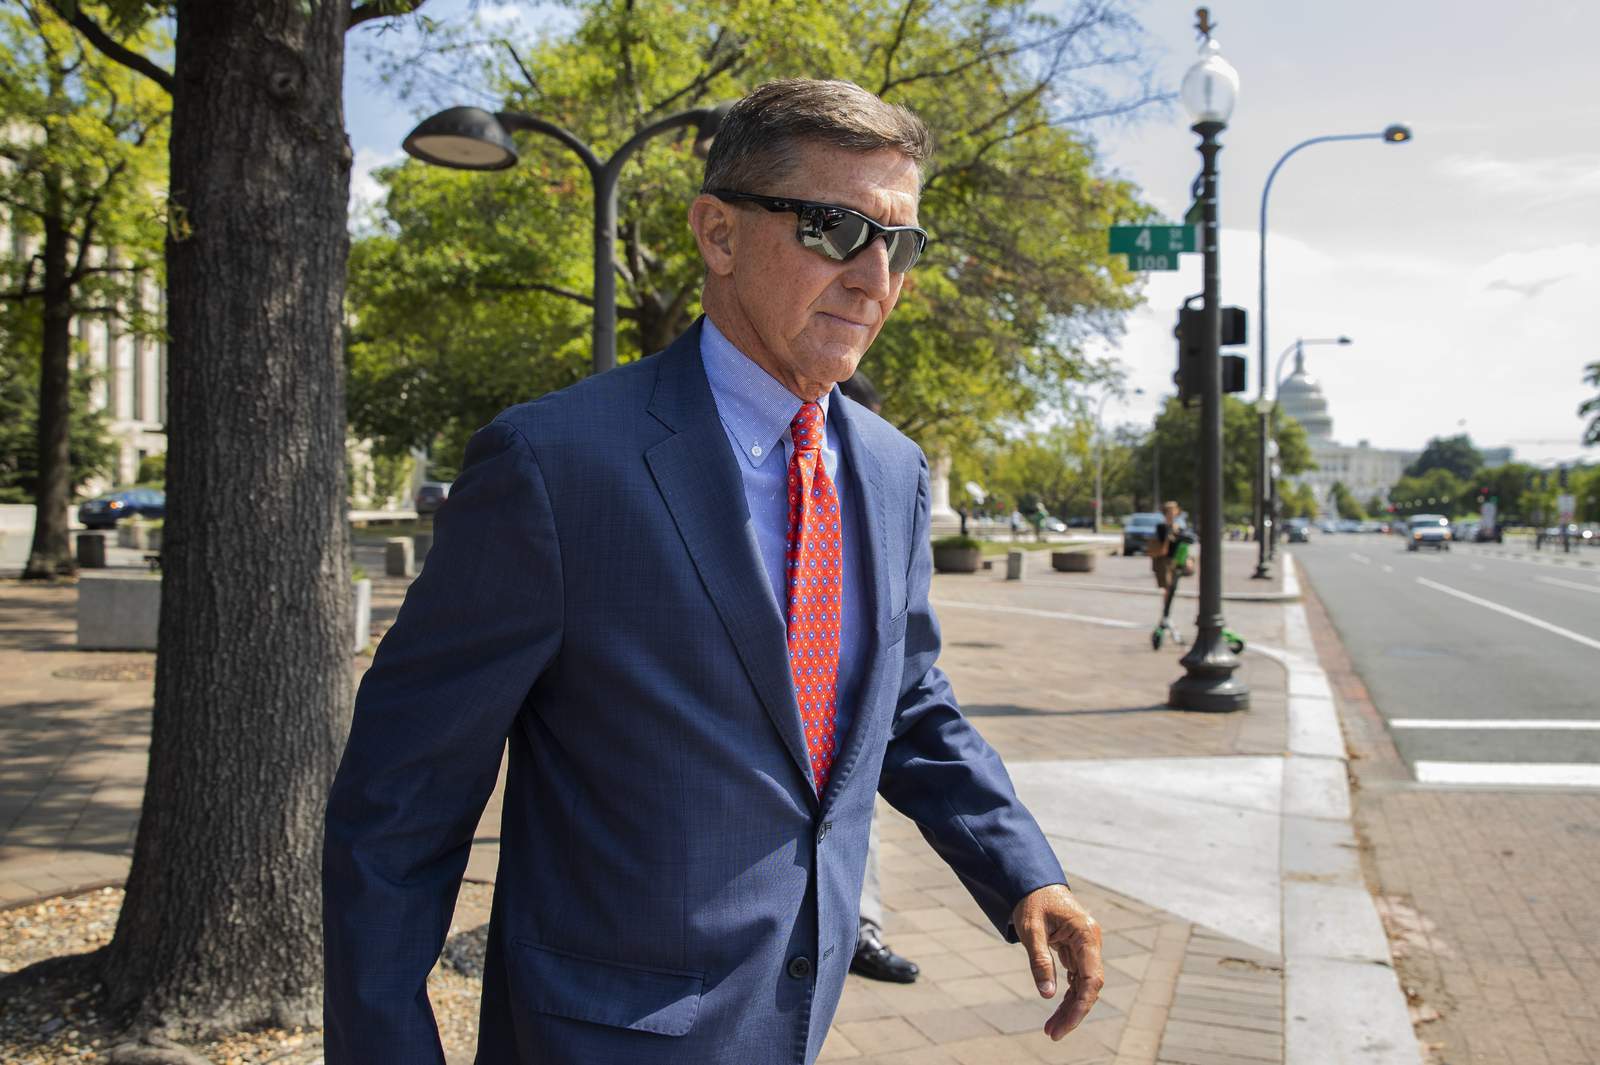 Appeals court keeps Flynn case alive, won't order dismissal